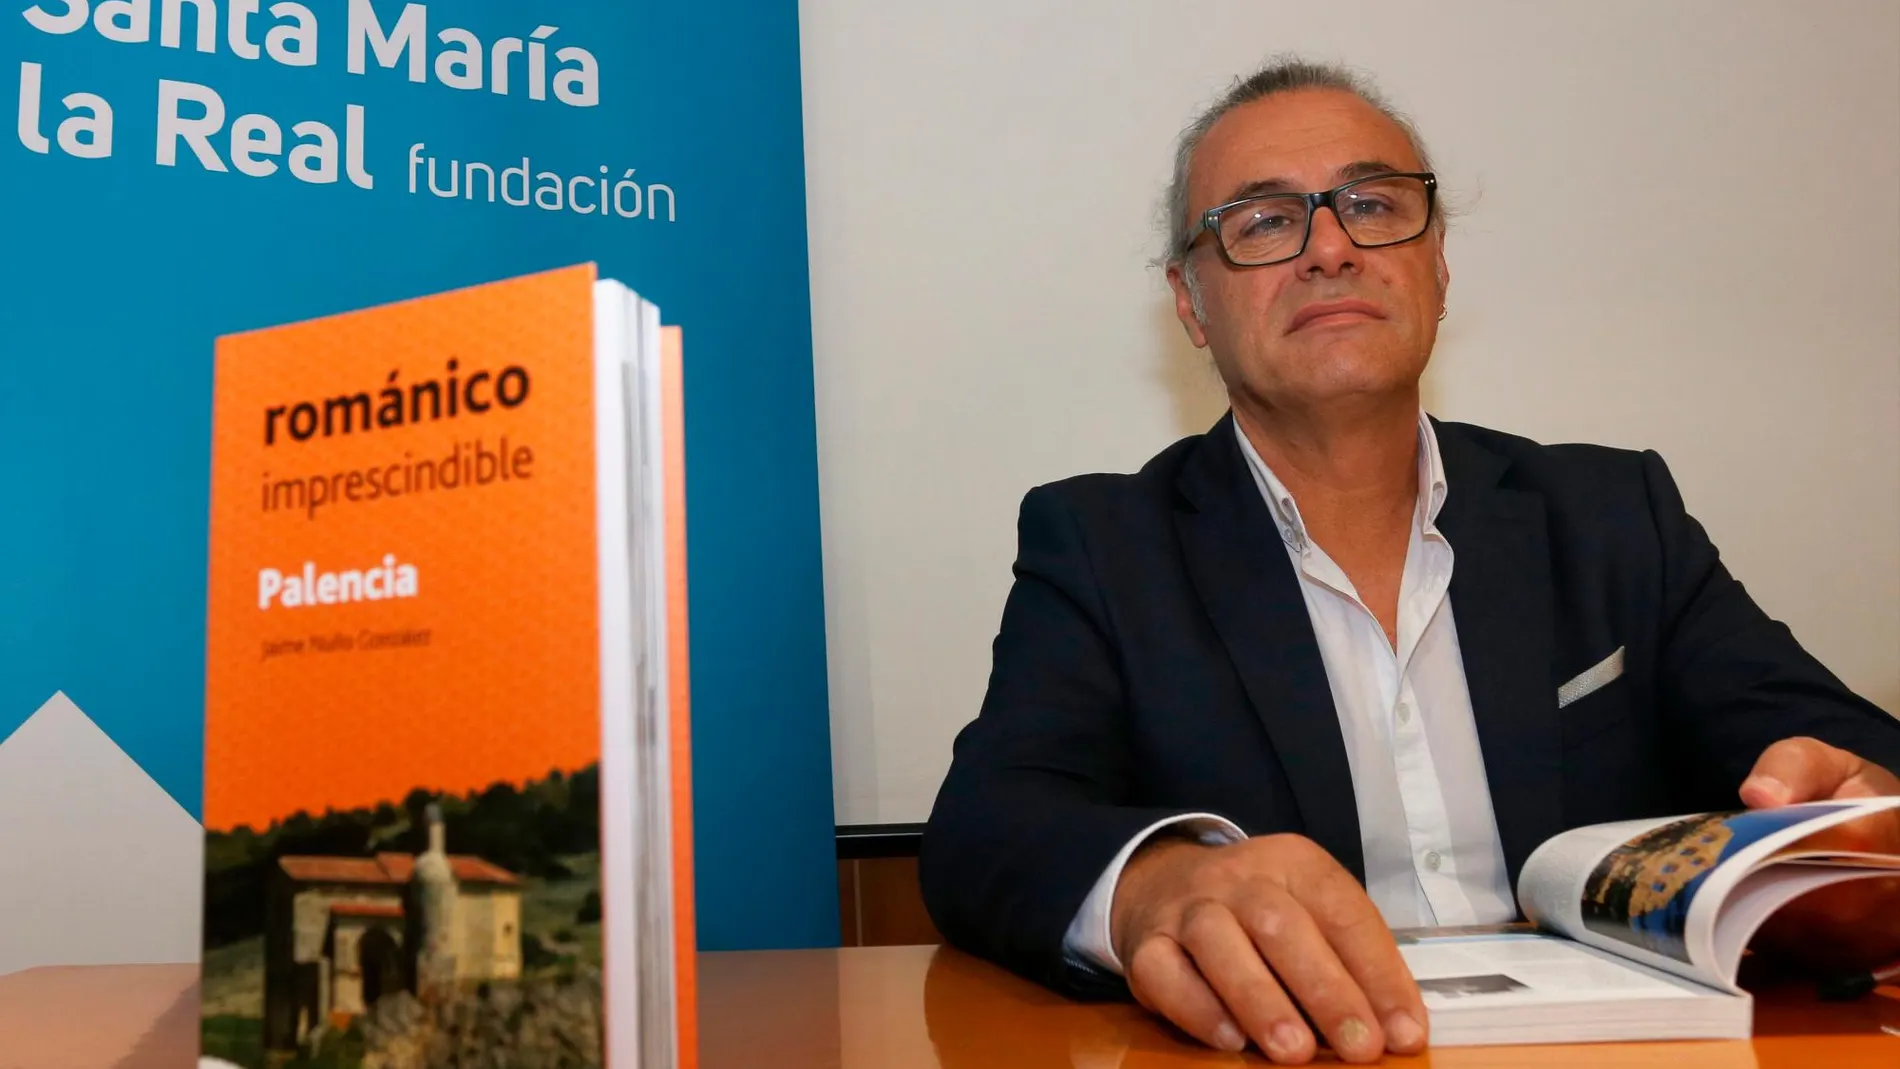 El director del Centro de Estudios del Románico de la Fundación Santa María la Real, Jaime Nuño González presenta la guía